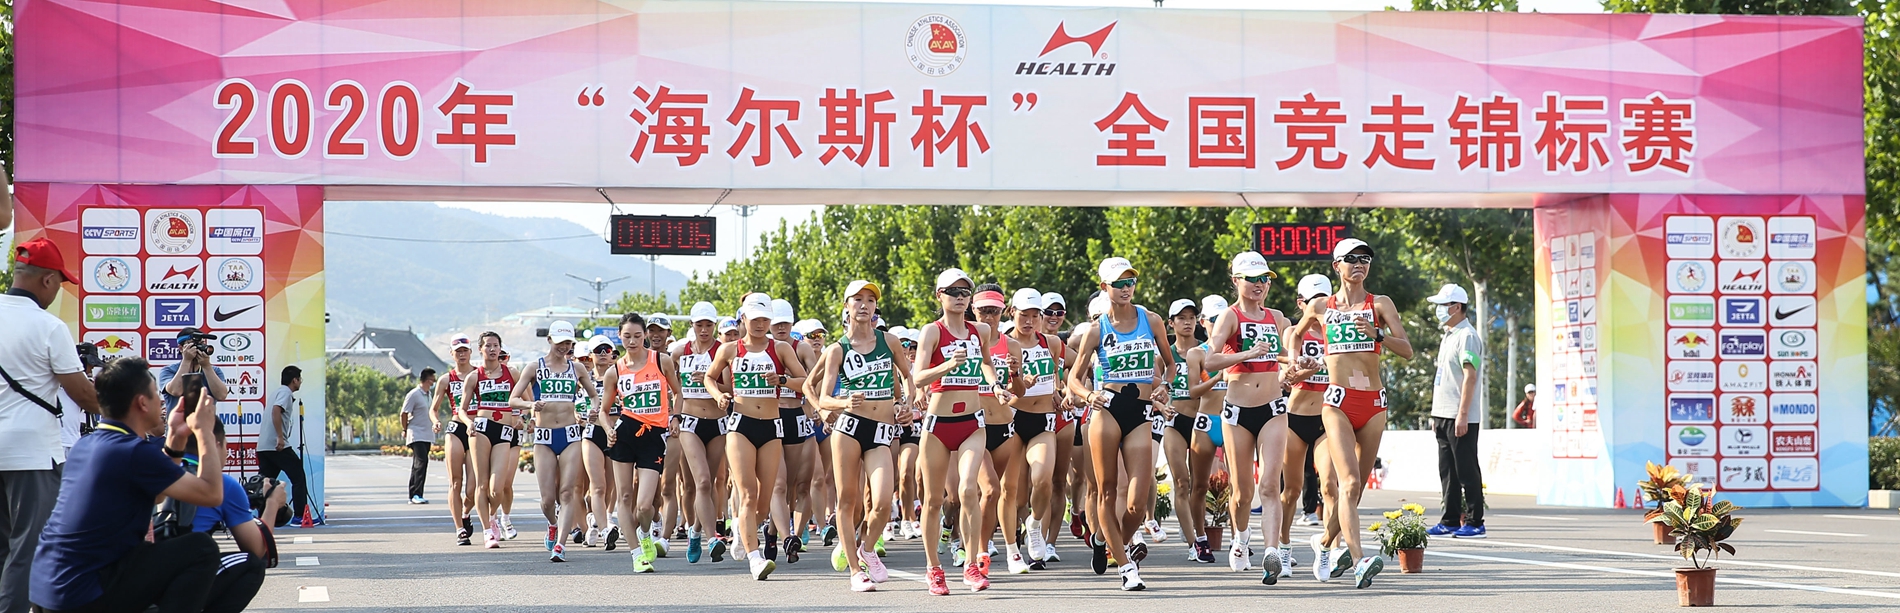 全国竞走锦标赛落幕 刘虹赛季首秀摘女子20公里竞走金牌